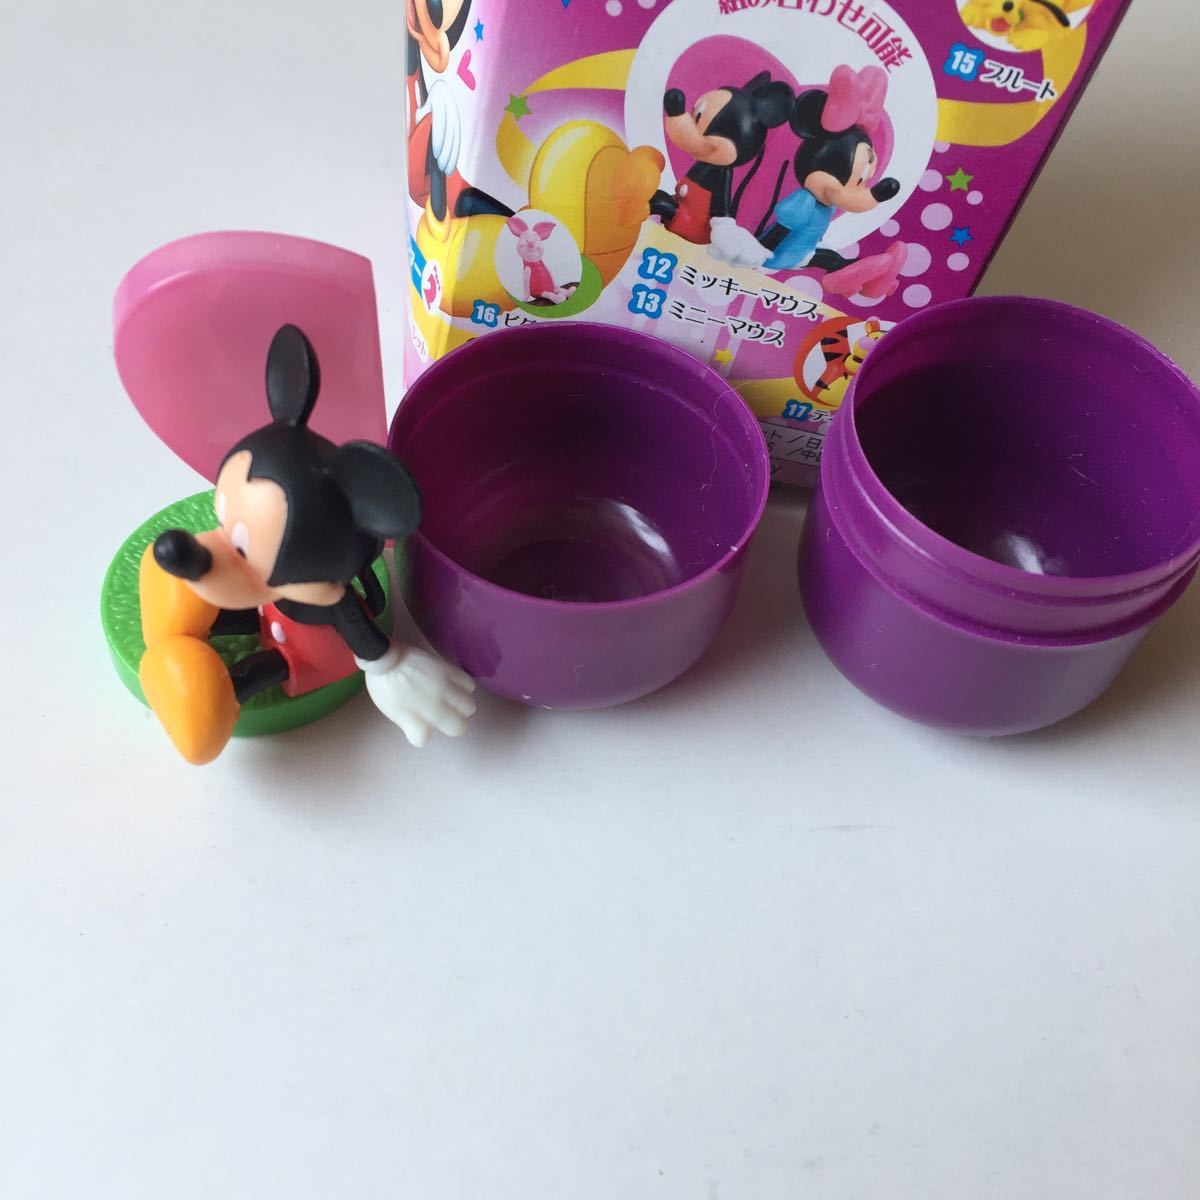 Tanakasan Shop 12 ミッキーマウス Micky Mouse チョコエッグ ディズニー キャラクター コレクション Part2 フルタ Furuta 食玩 Chocoegg フィギュア 第2弾